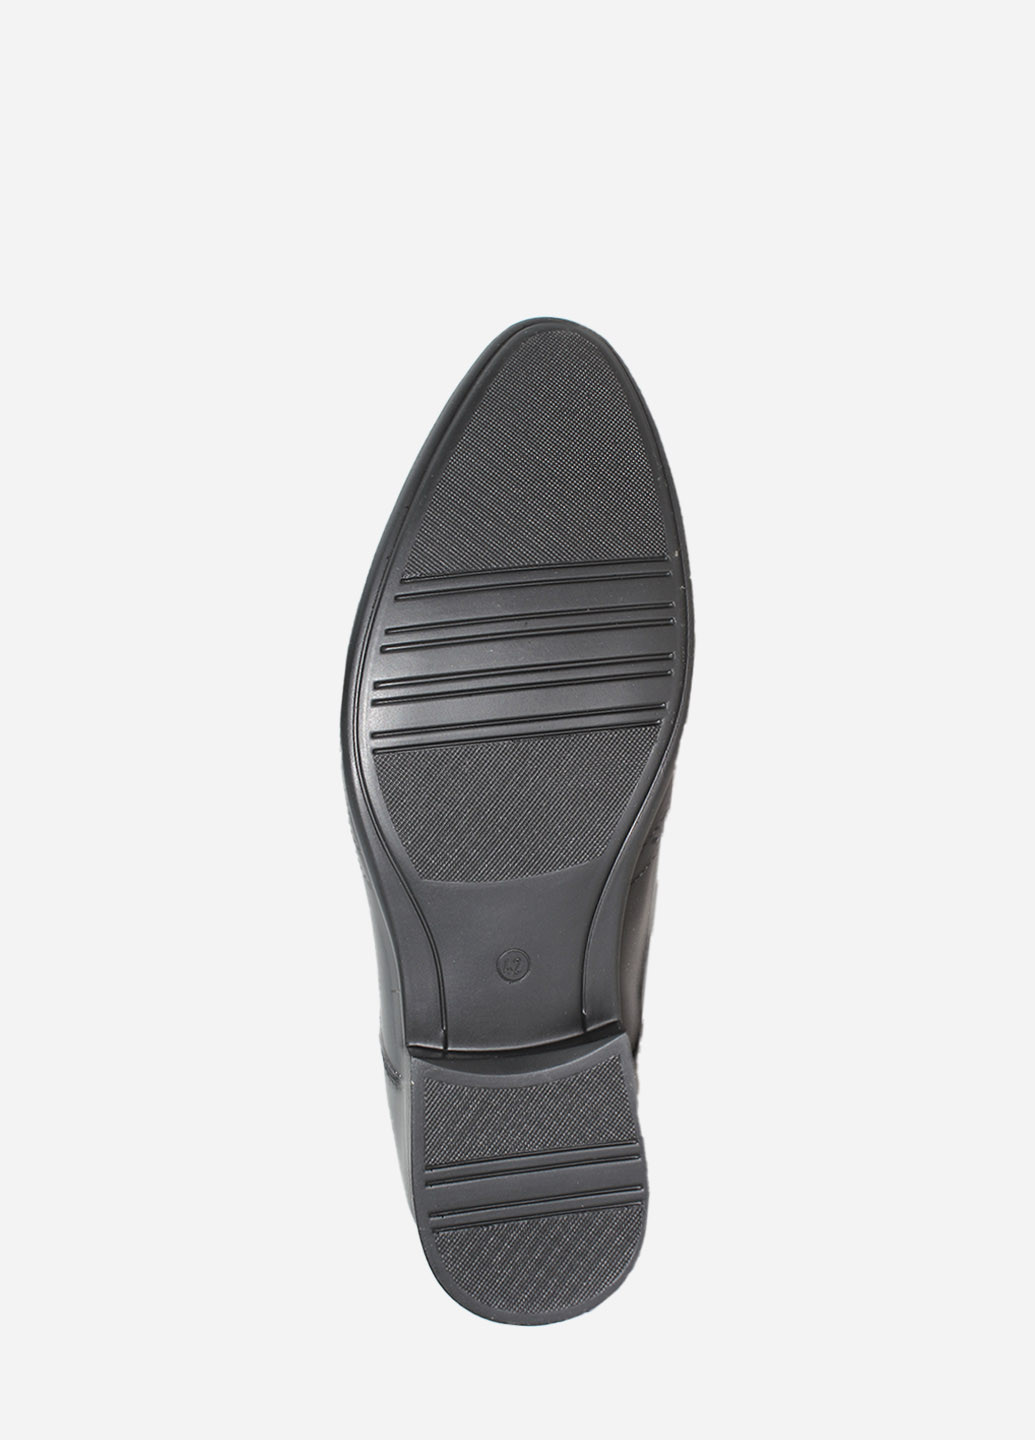 Черные классические туфли rb1-99 черный Bottini